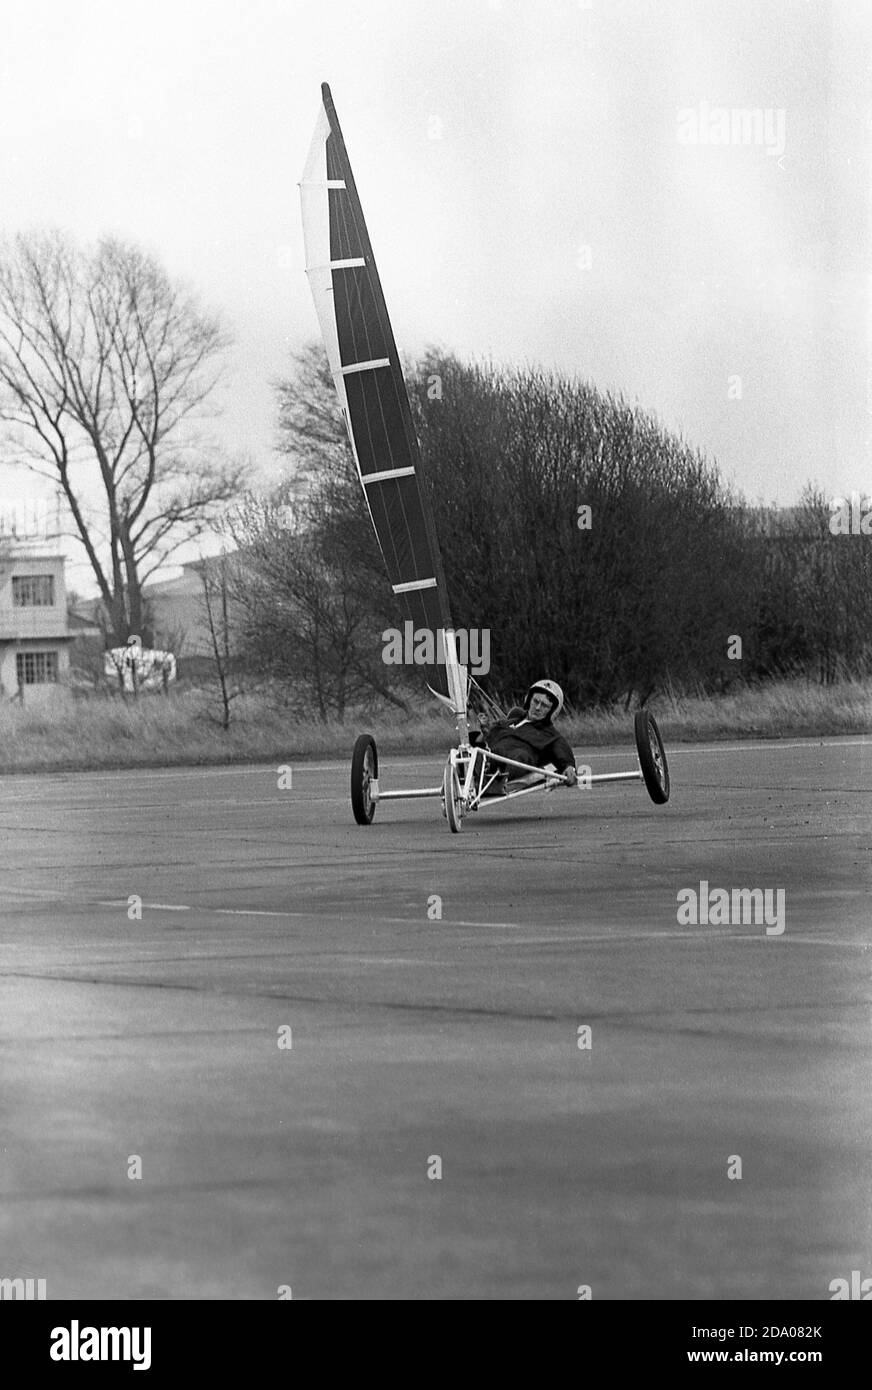 Années 1980, historique, un concurrent masculin participant à une compétition de char à voile, Angleterre, Royaume-Uni. Également connue sous le nom de voile terrestre, l'activité implique un véhicule à roues alimenté par le vent grâce à l'utilisation d'une voile. Banque D'Images